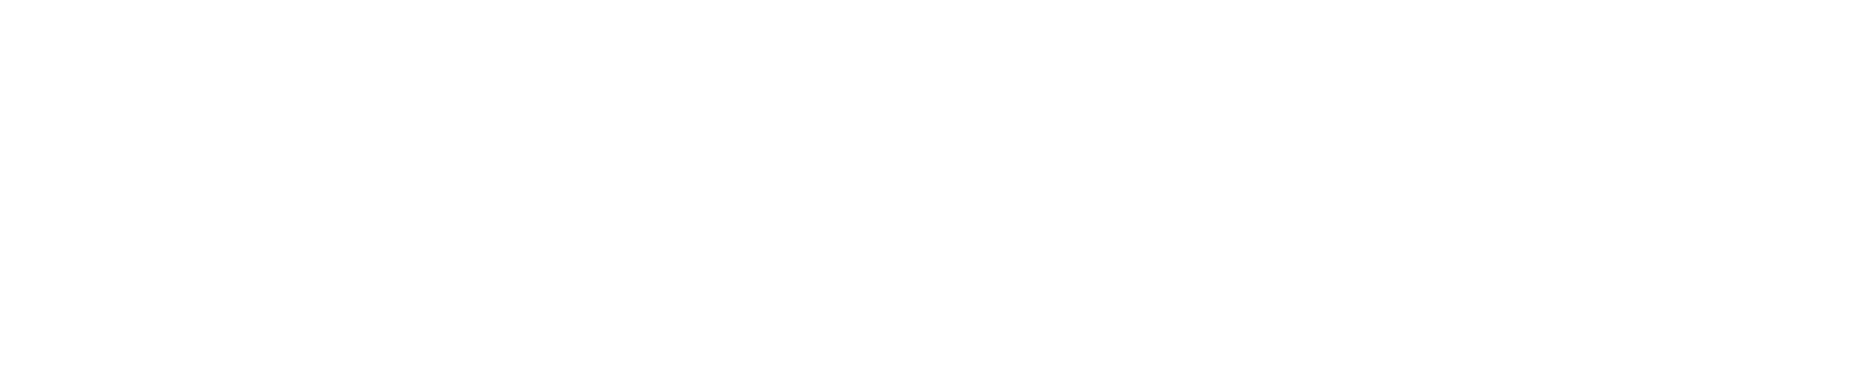 MEY-DEB